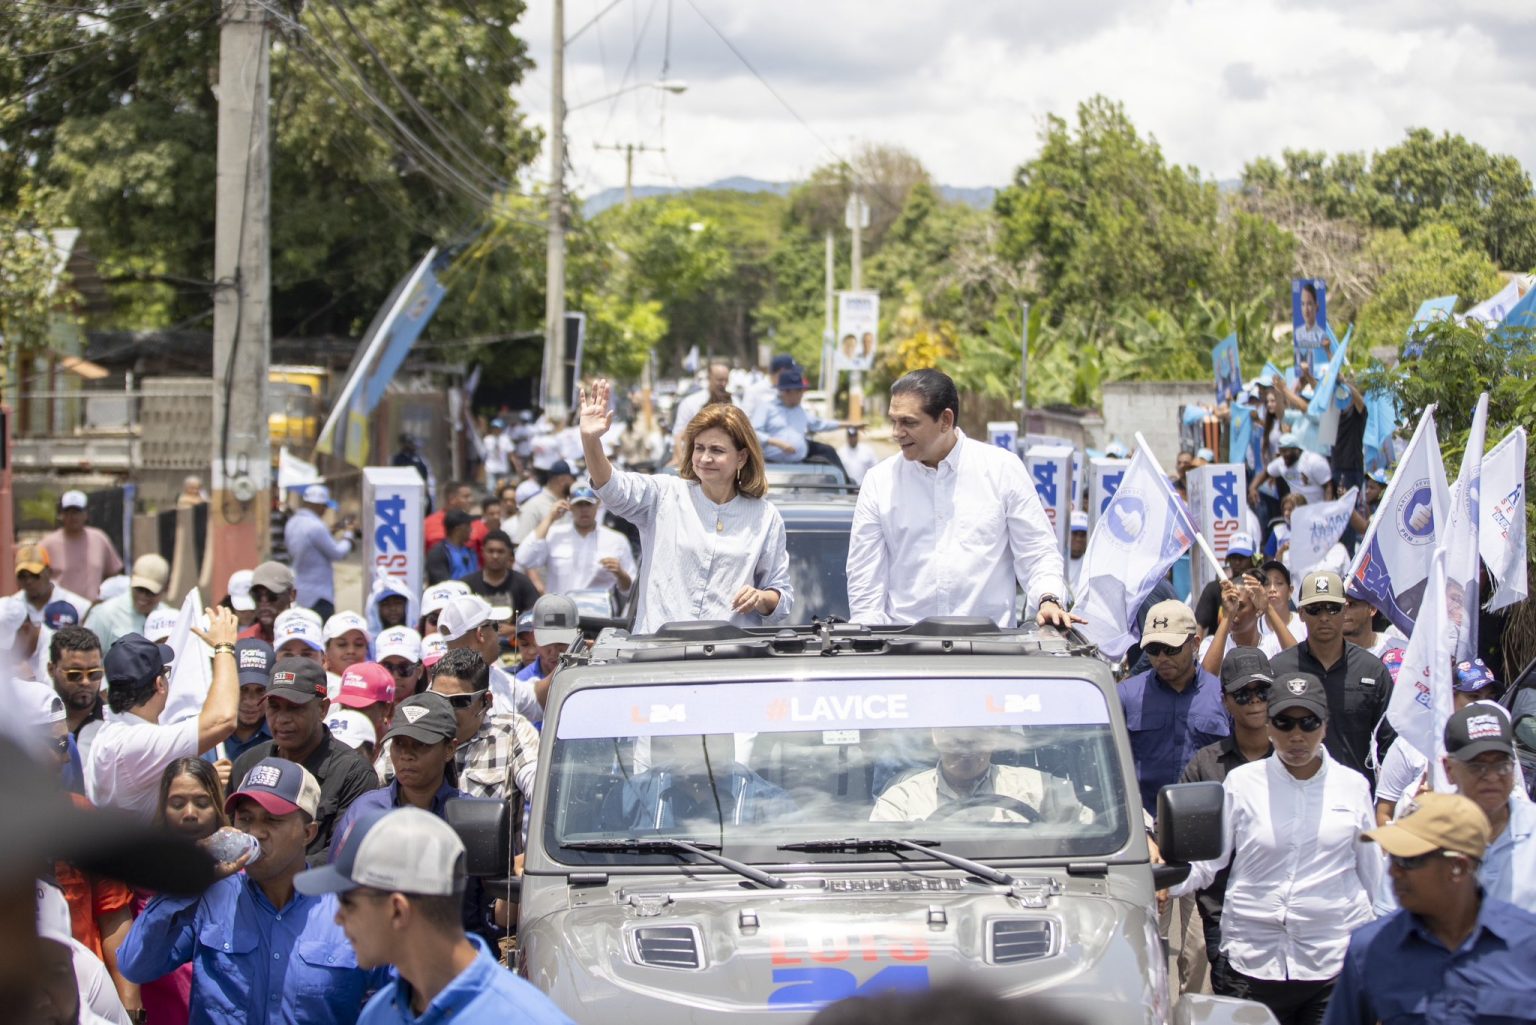 Raquel pena vicepresidenta encabeza multitudinaria caravana en Tamboril y Licey al Medio en apoyo a candidatos PRM